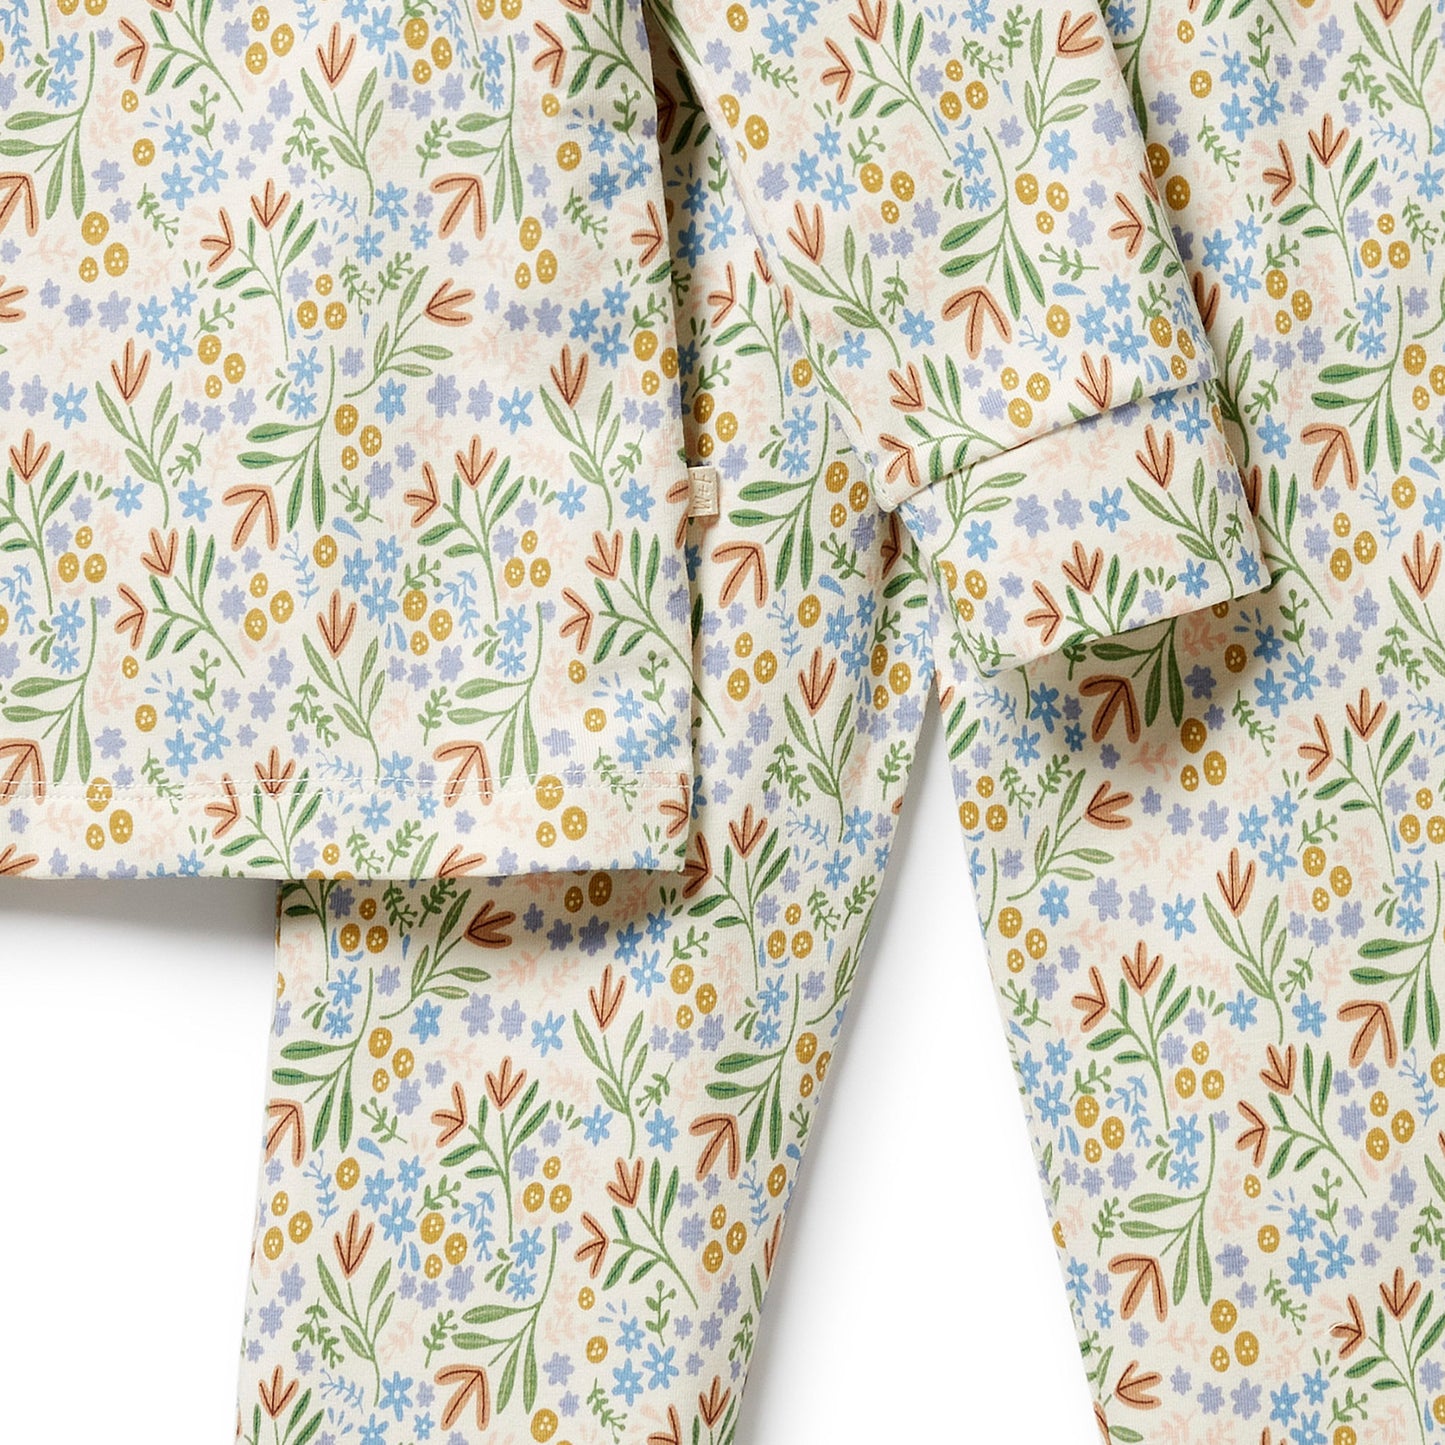 Tinker Floral Organic Pyjamas